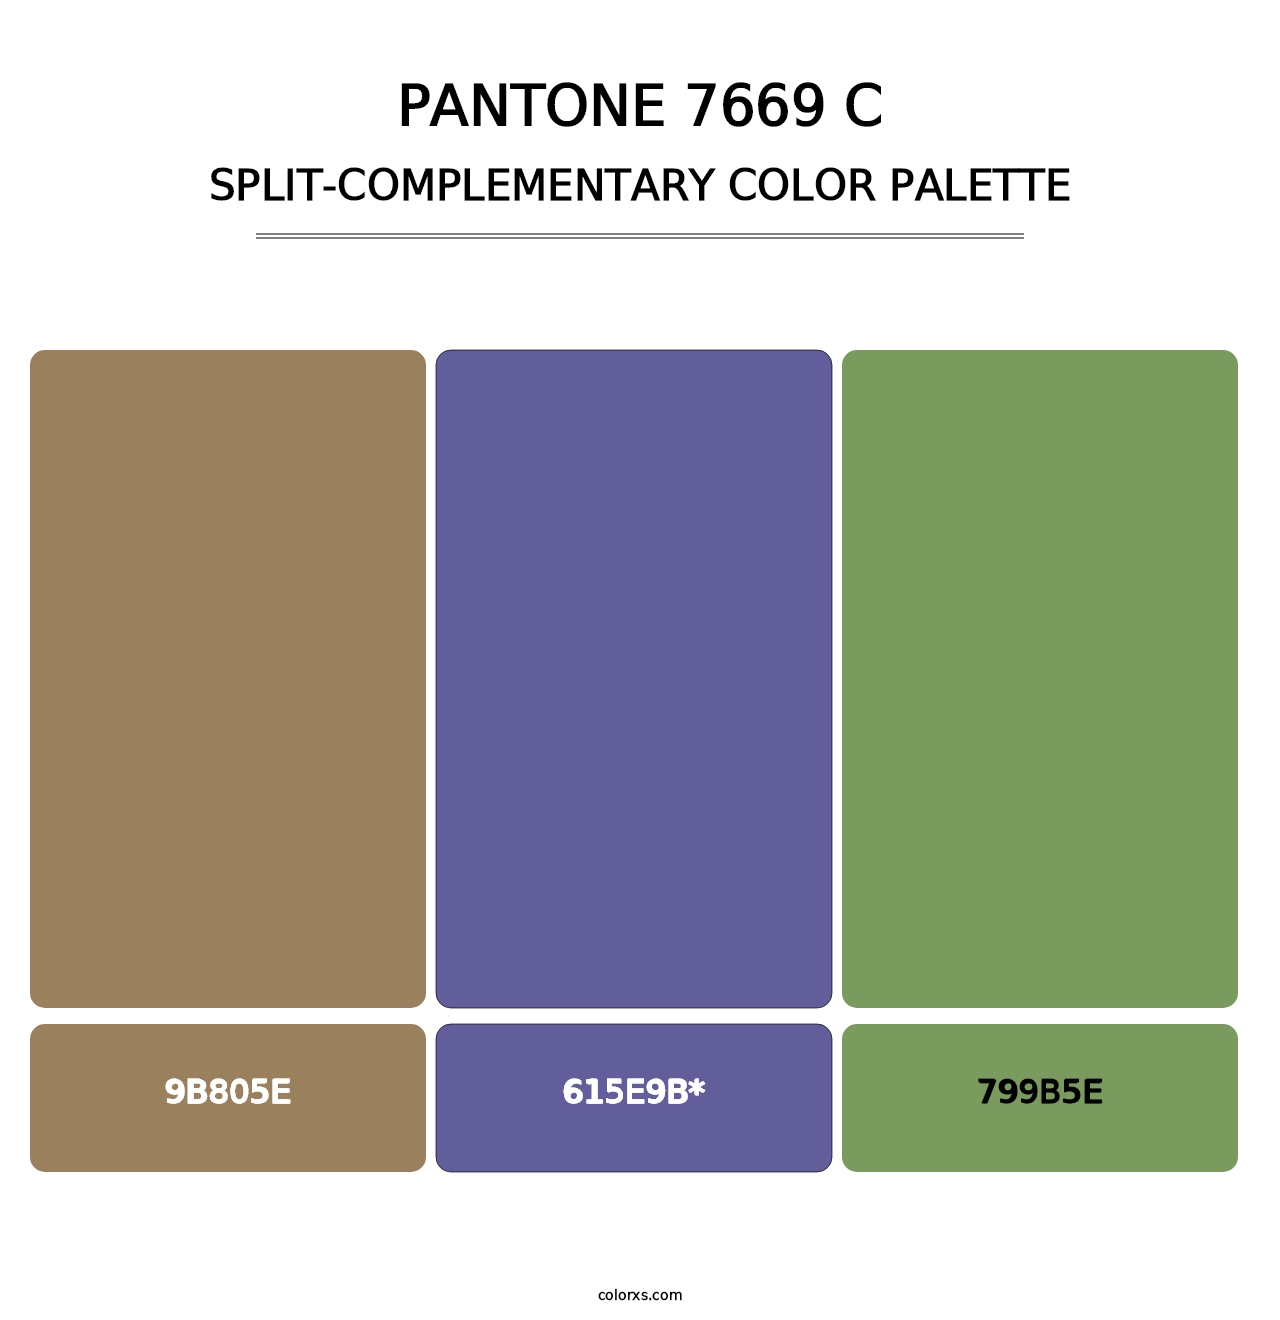 PANTONE 7669 C - Split-Complementary Color Palette